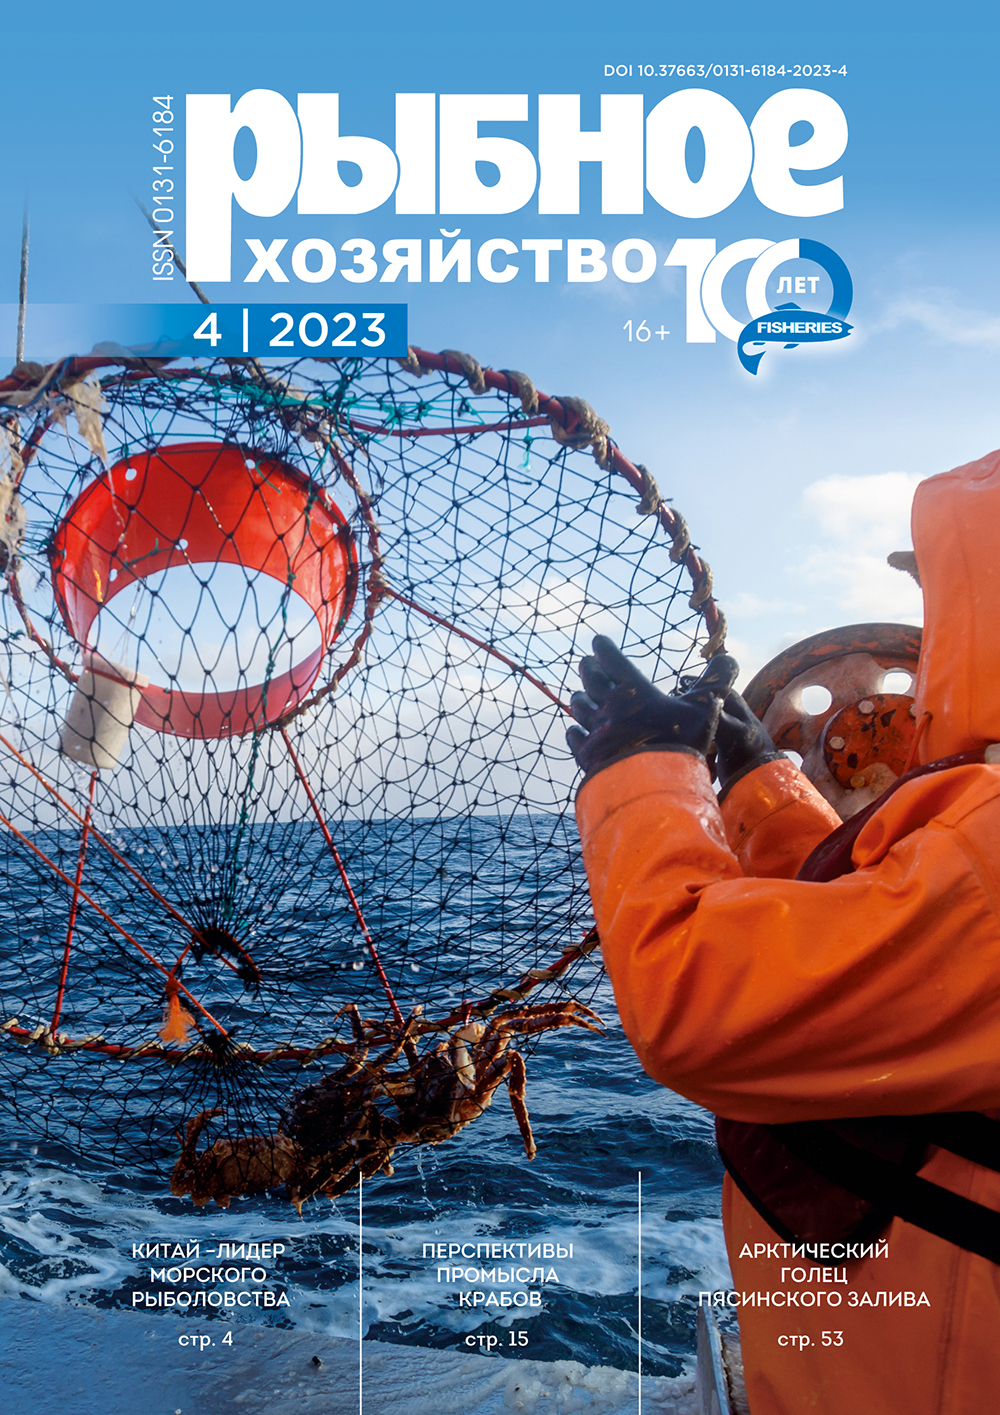             Китай – мировой лидер морского рыболовства и аквакультуры
    